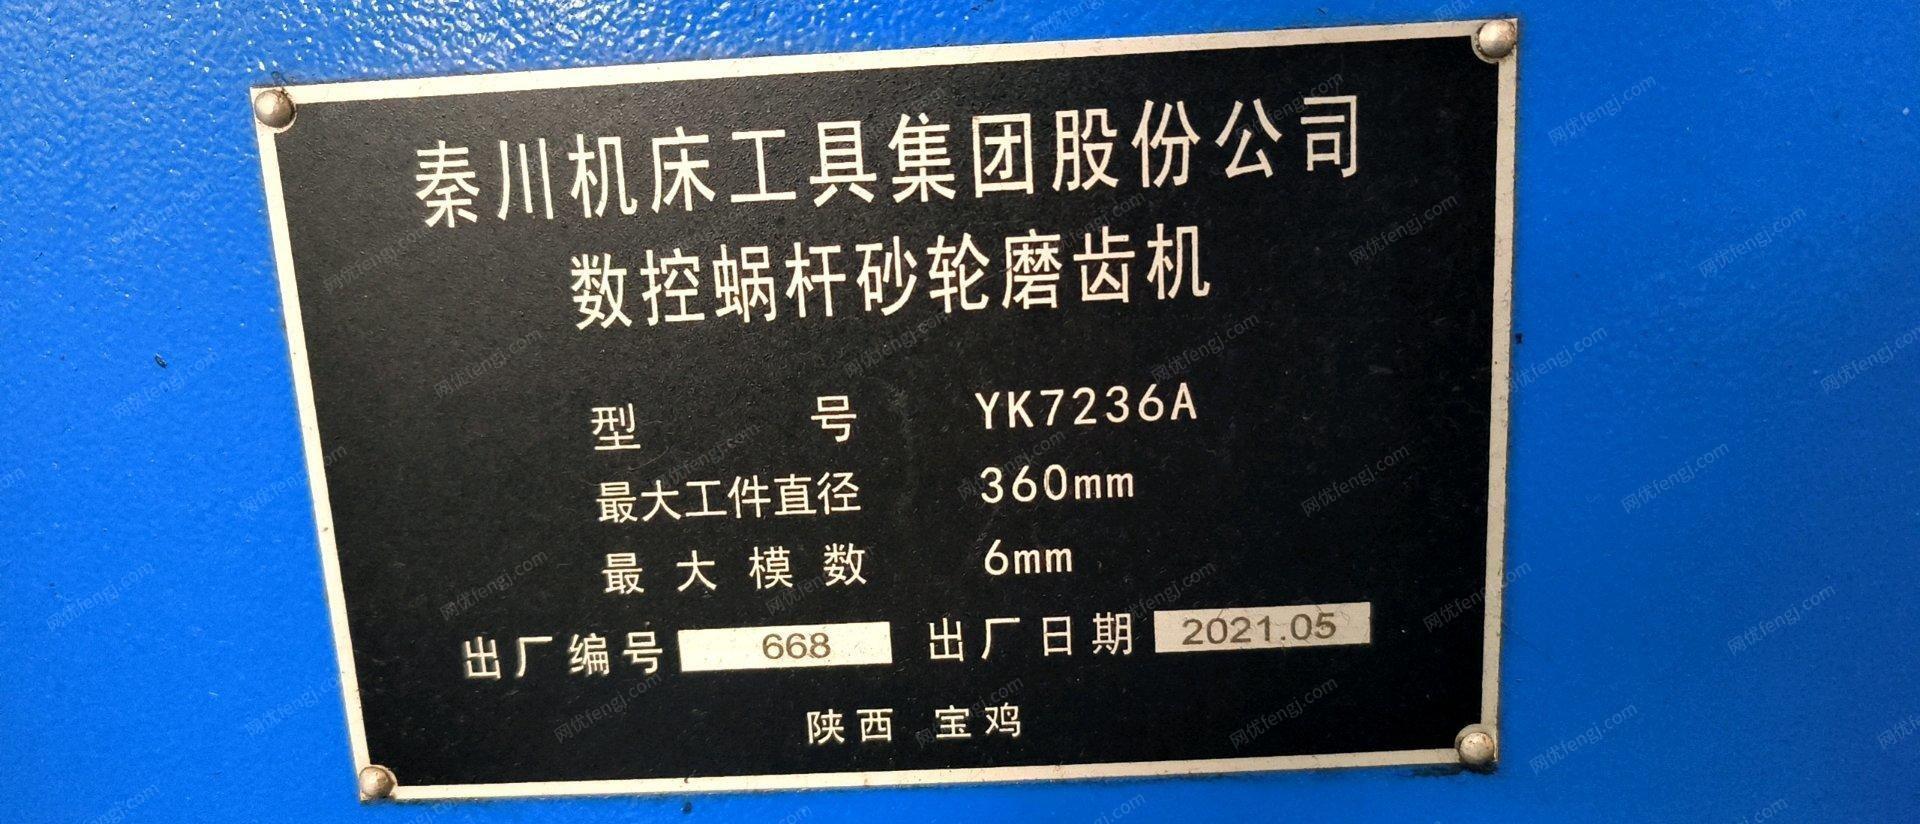 江西南昌秦川在位出售磨齿机YK7236A，基本全新未用